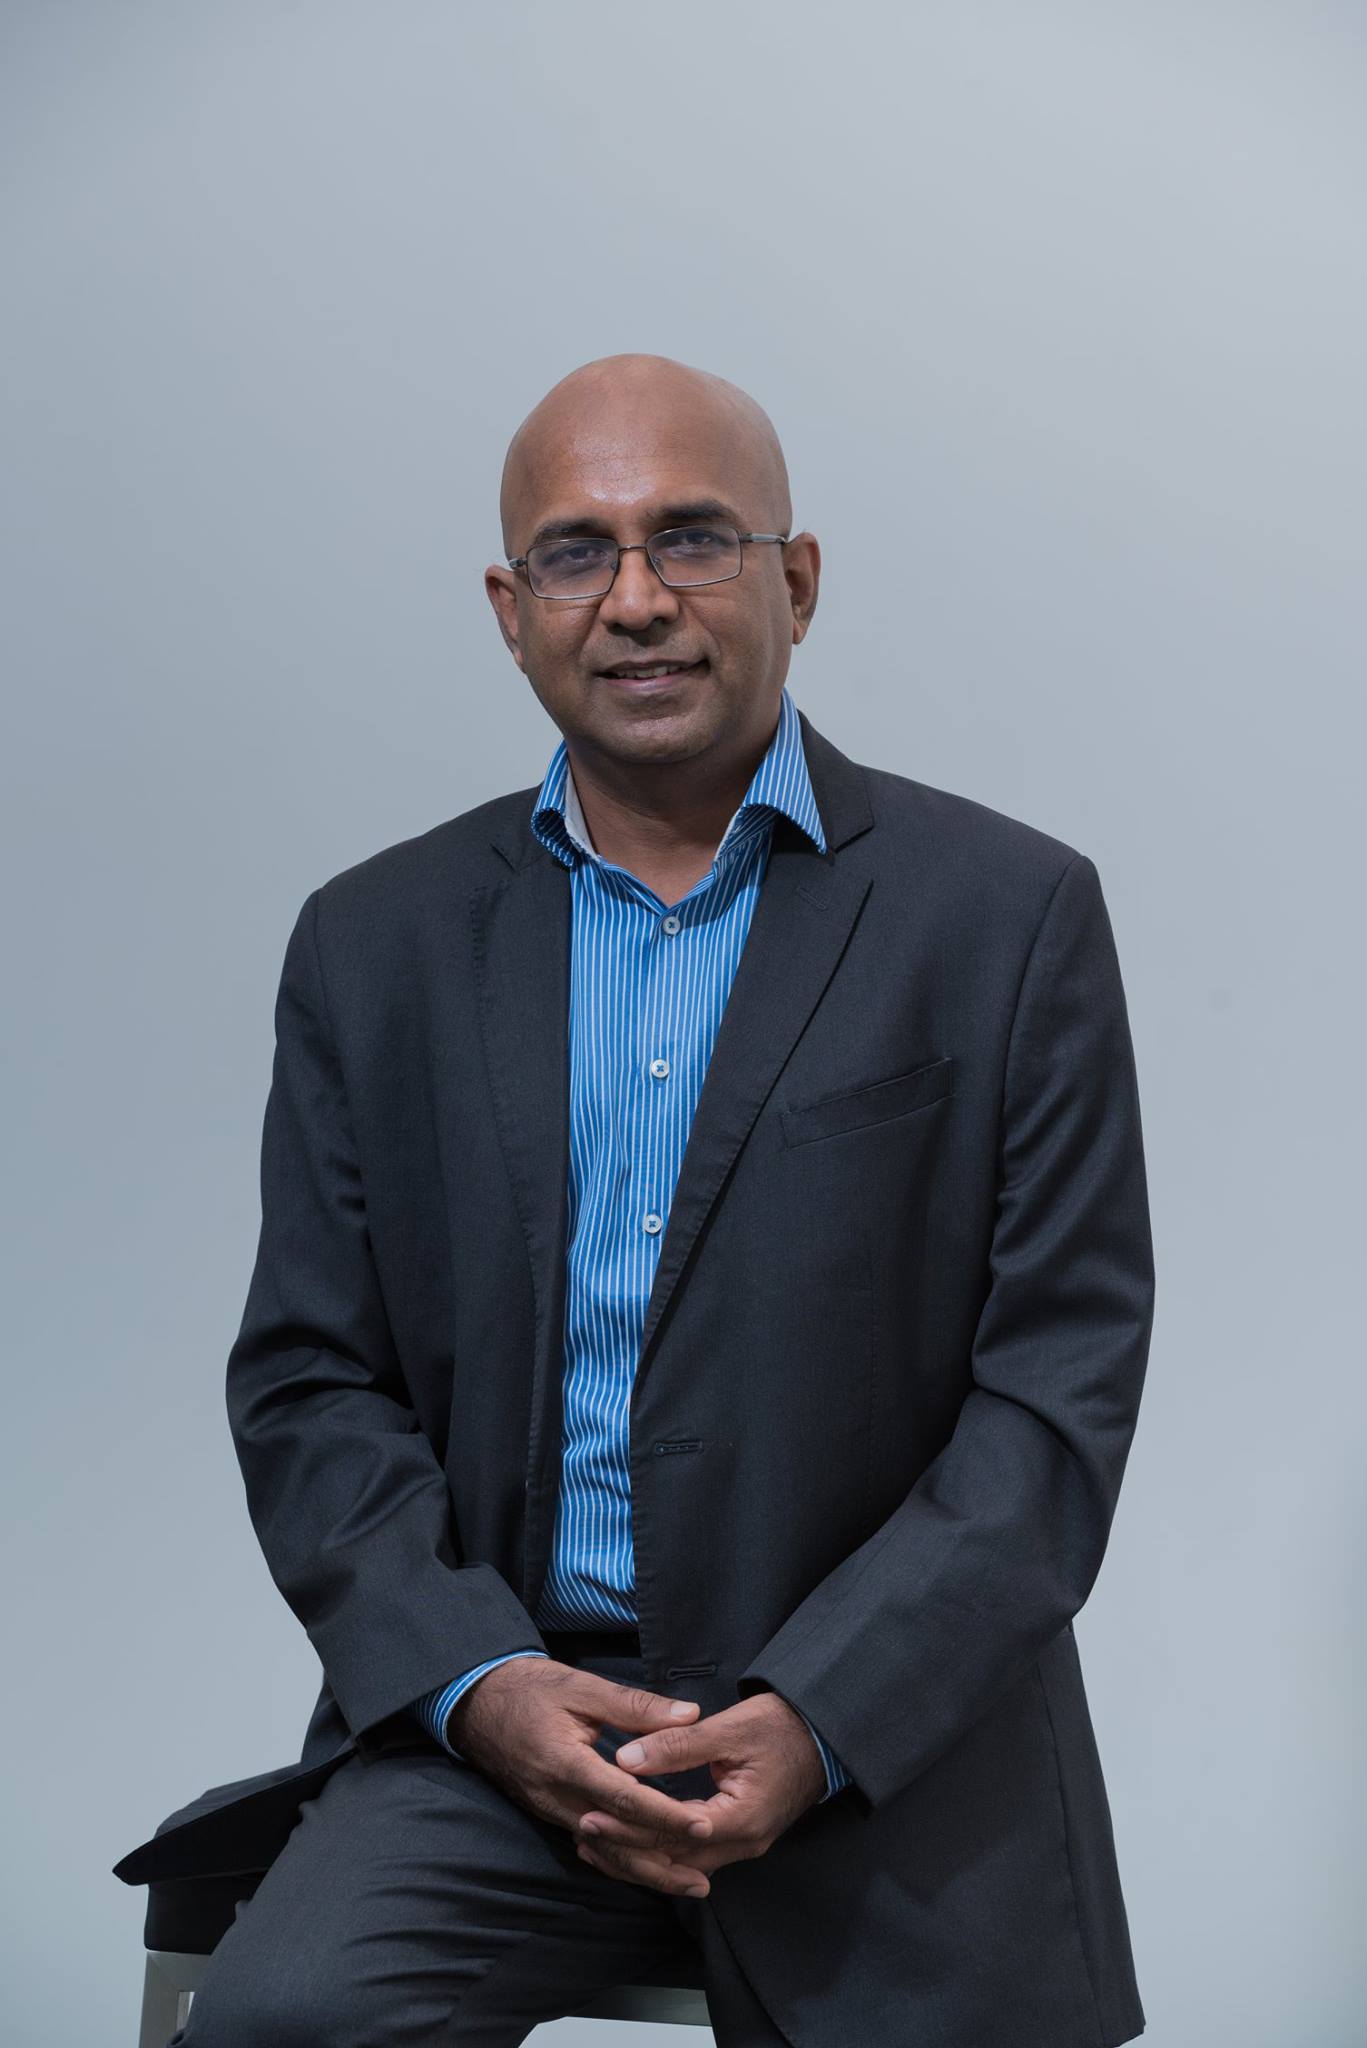 Venkat Viswanathan - Founder & Chairman, LatentView Analytics